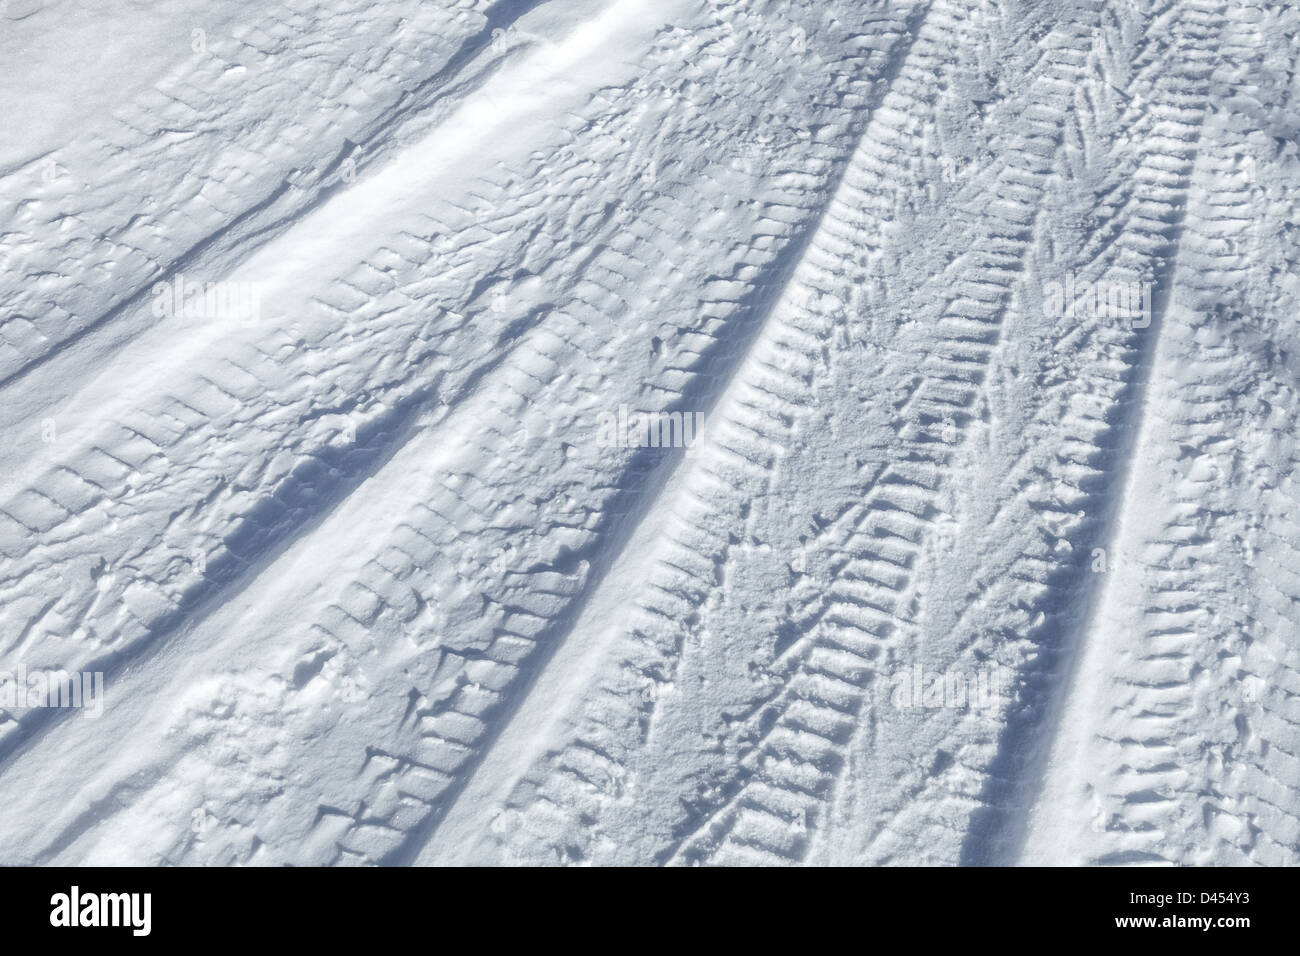 Hintergrundtextur des Reifens Bahnen auf der Straße mit Schnee bedeckt Stockfoto